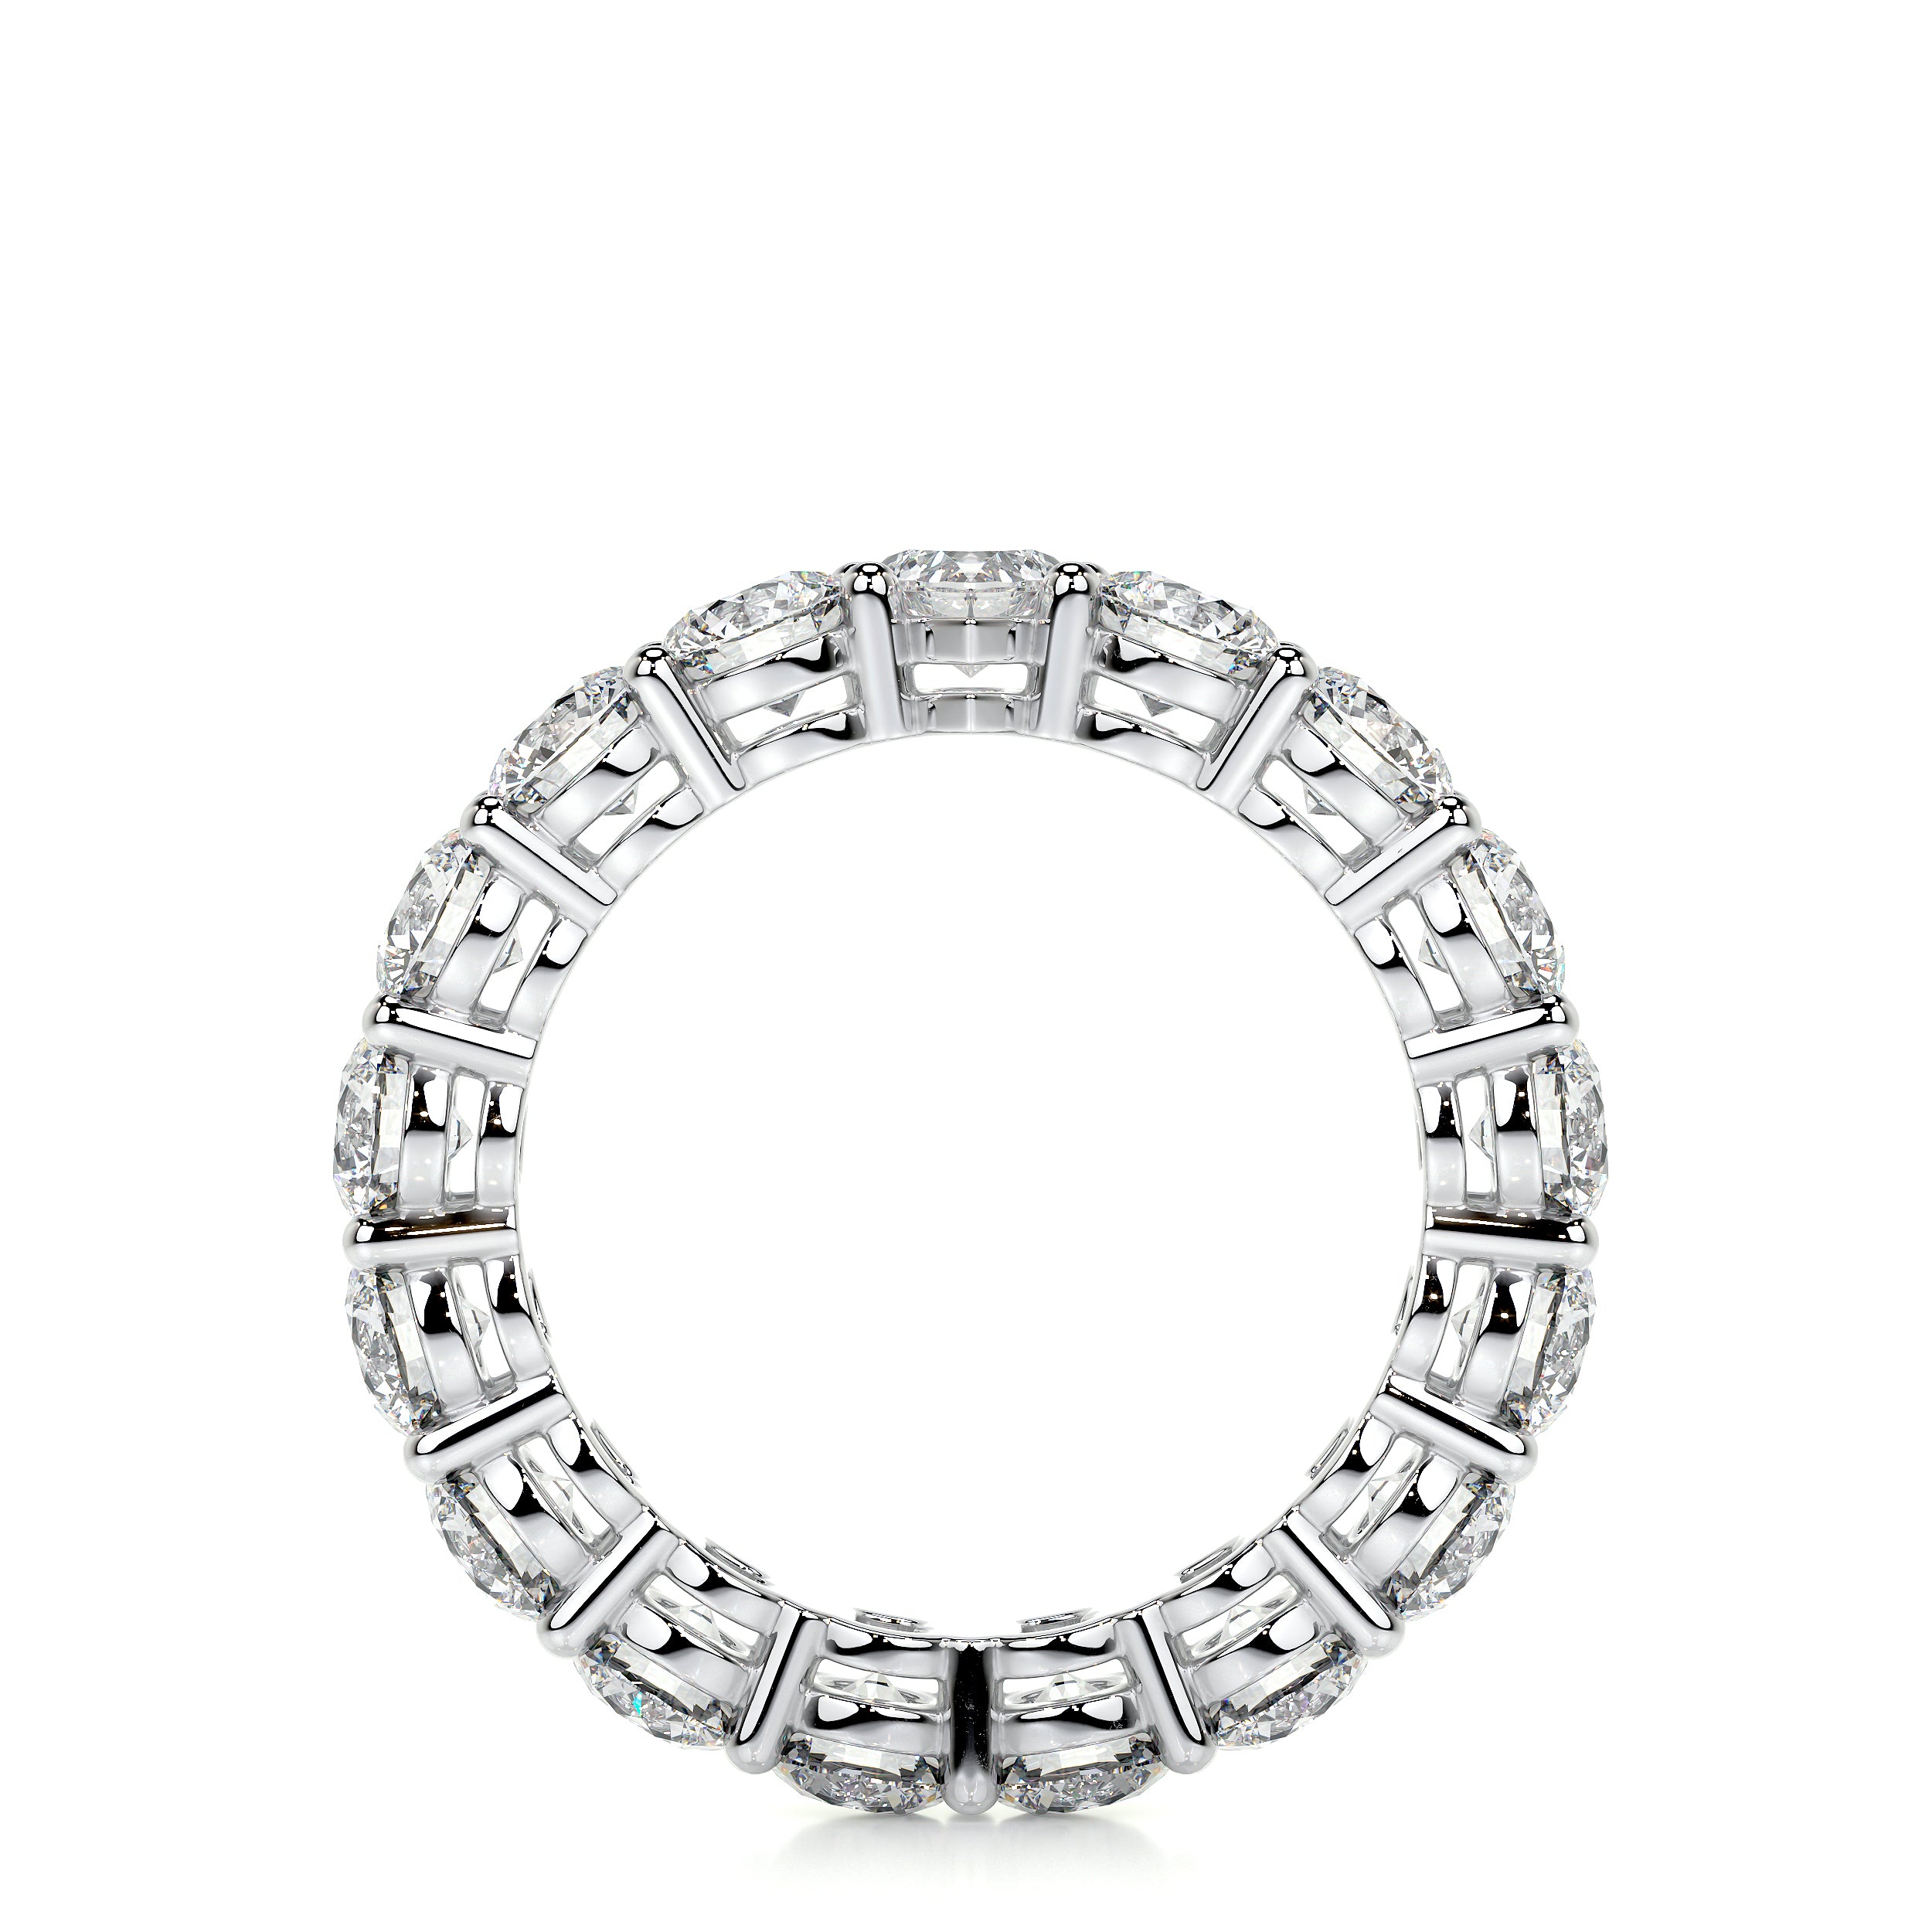 Anne Lab Grown Diamond Wedding Ring   (4 Carat) -18K White Gold